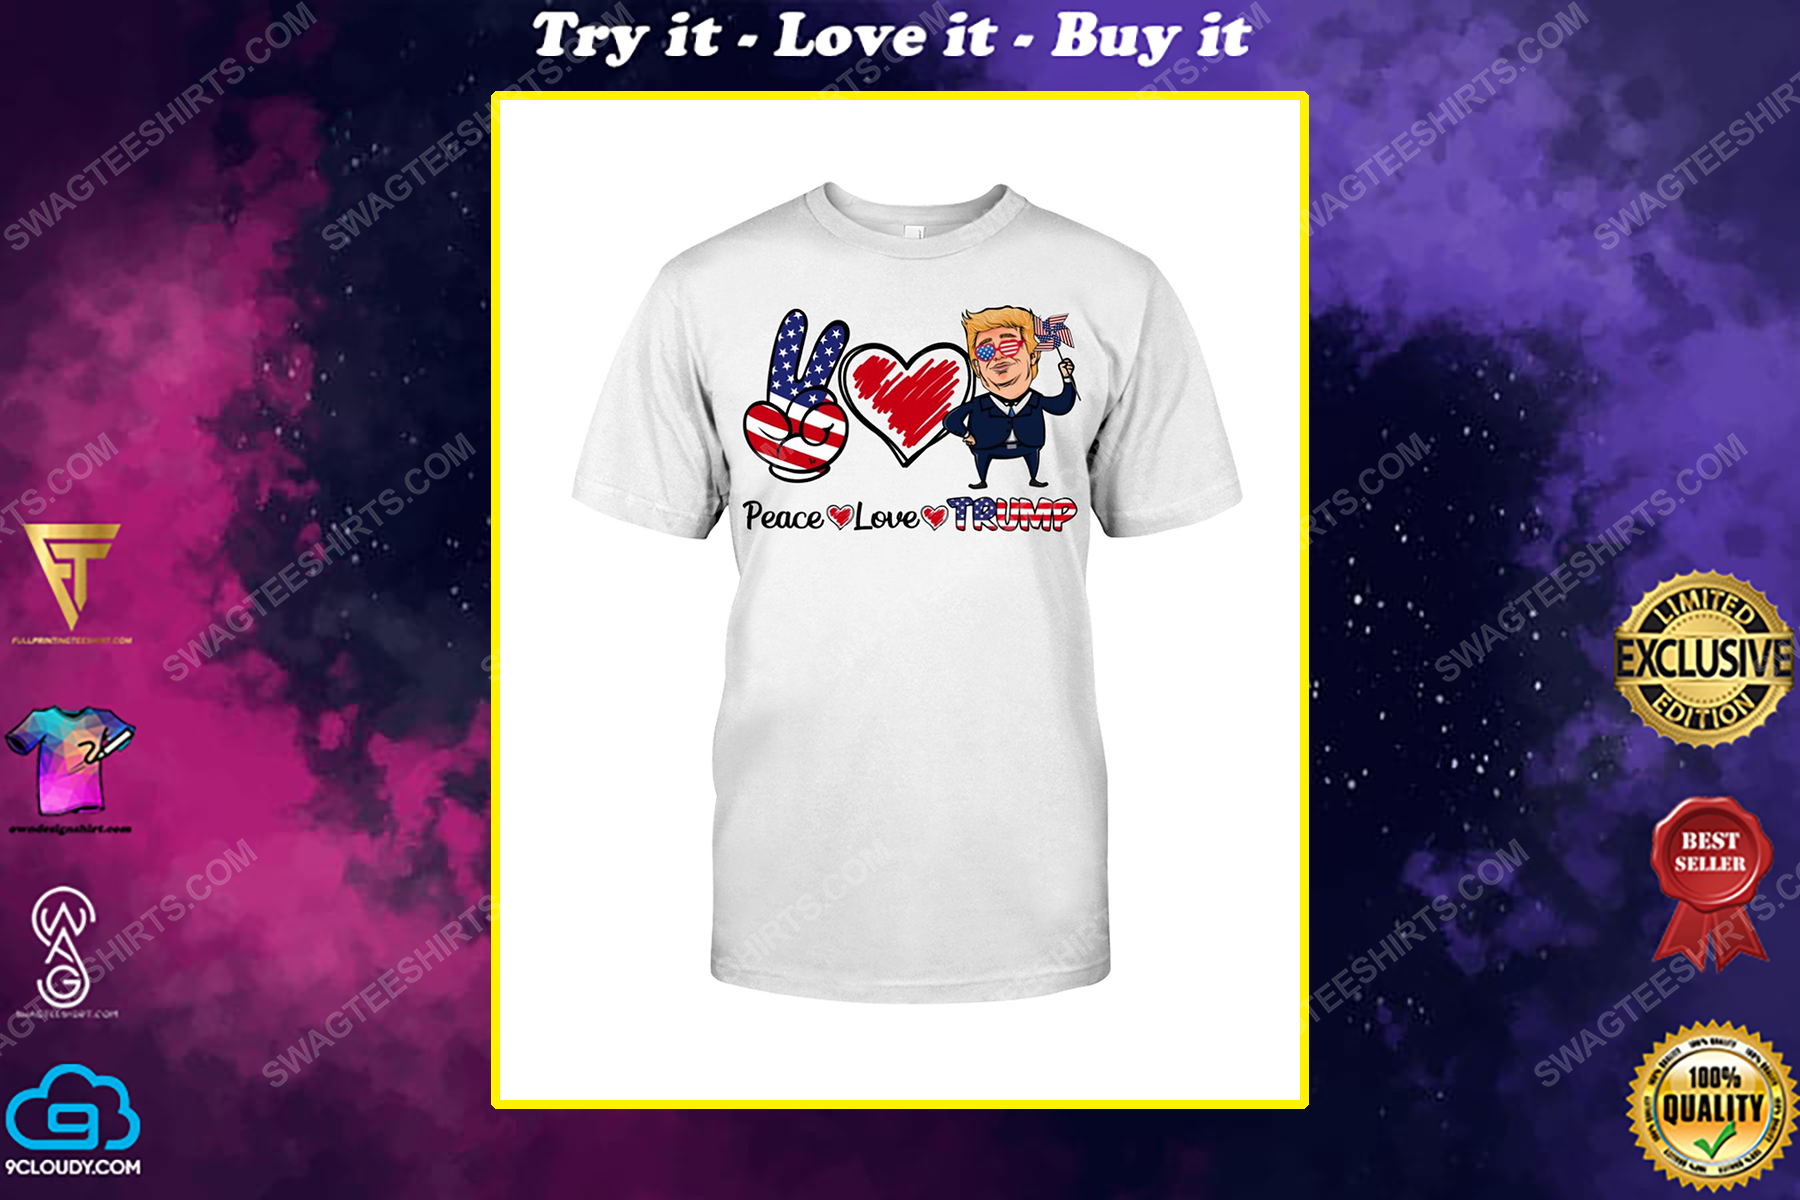 Peace love trump american flag political shirt